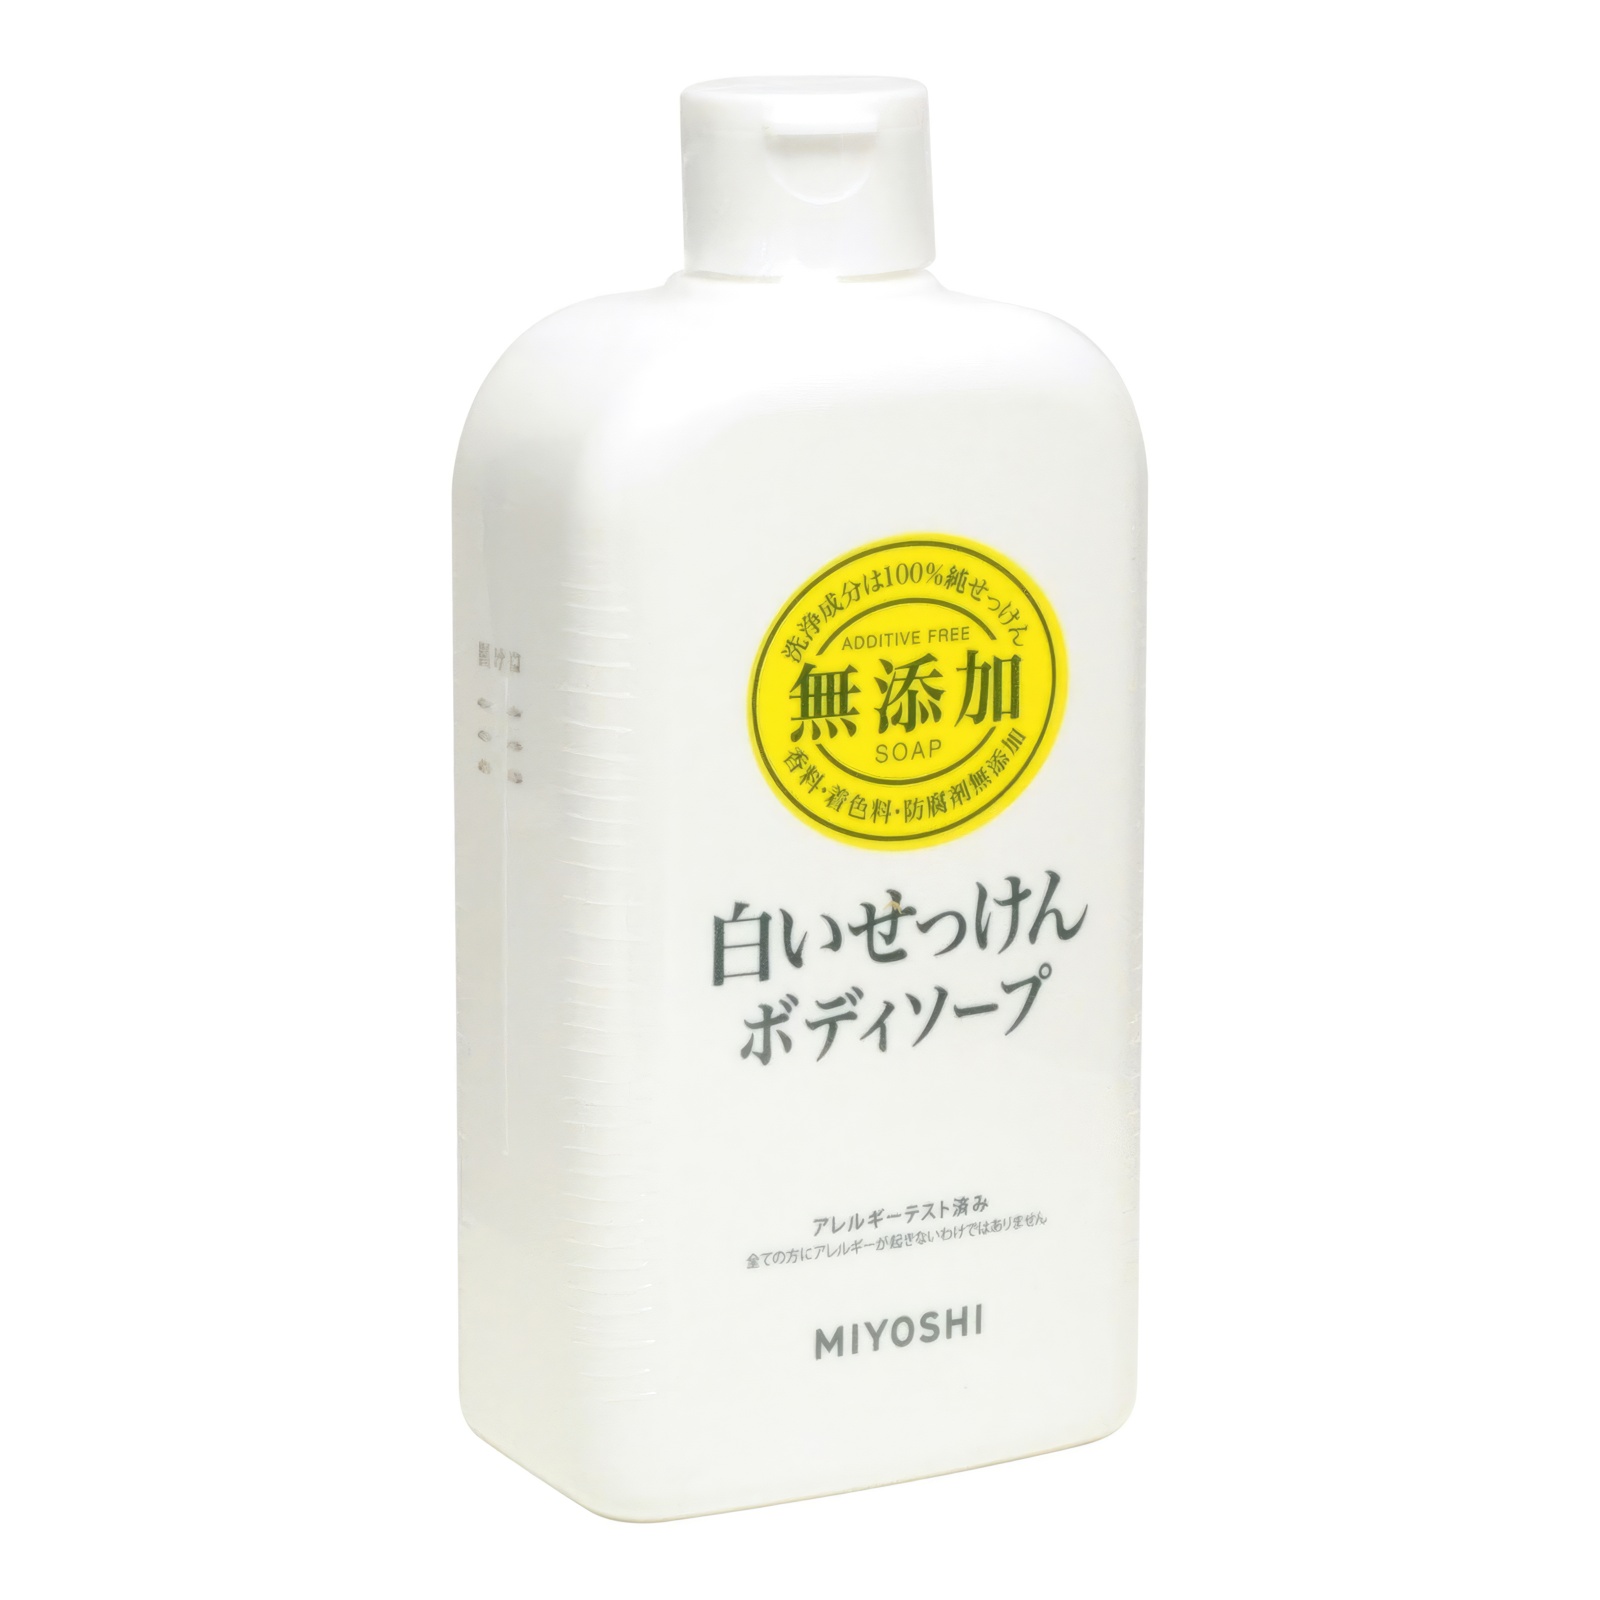 Натуральное жидкое гель-мыло MIYOSHI эко для тела 400 мл